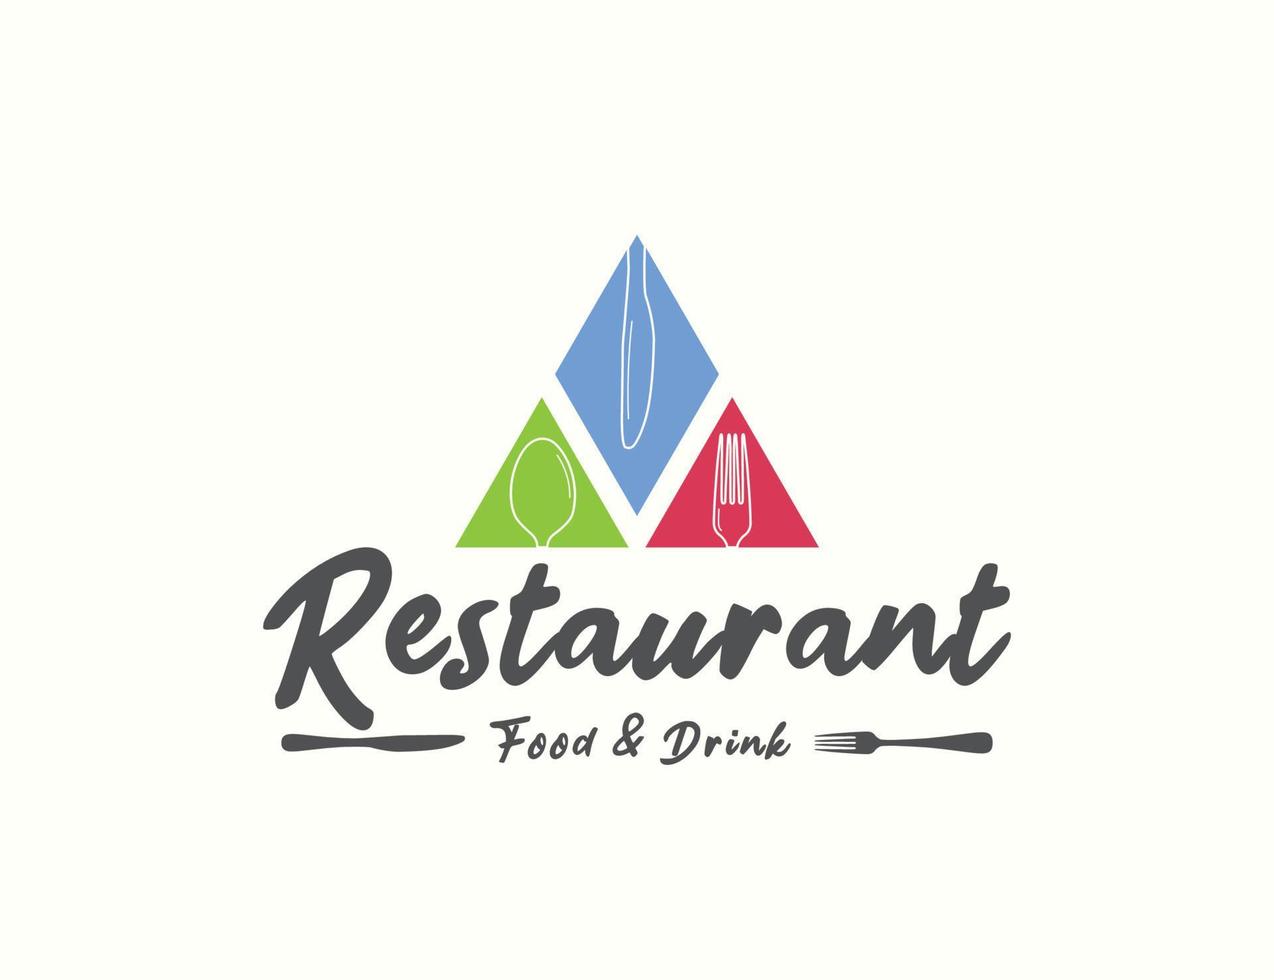 création de logo de restaurant vecteur